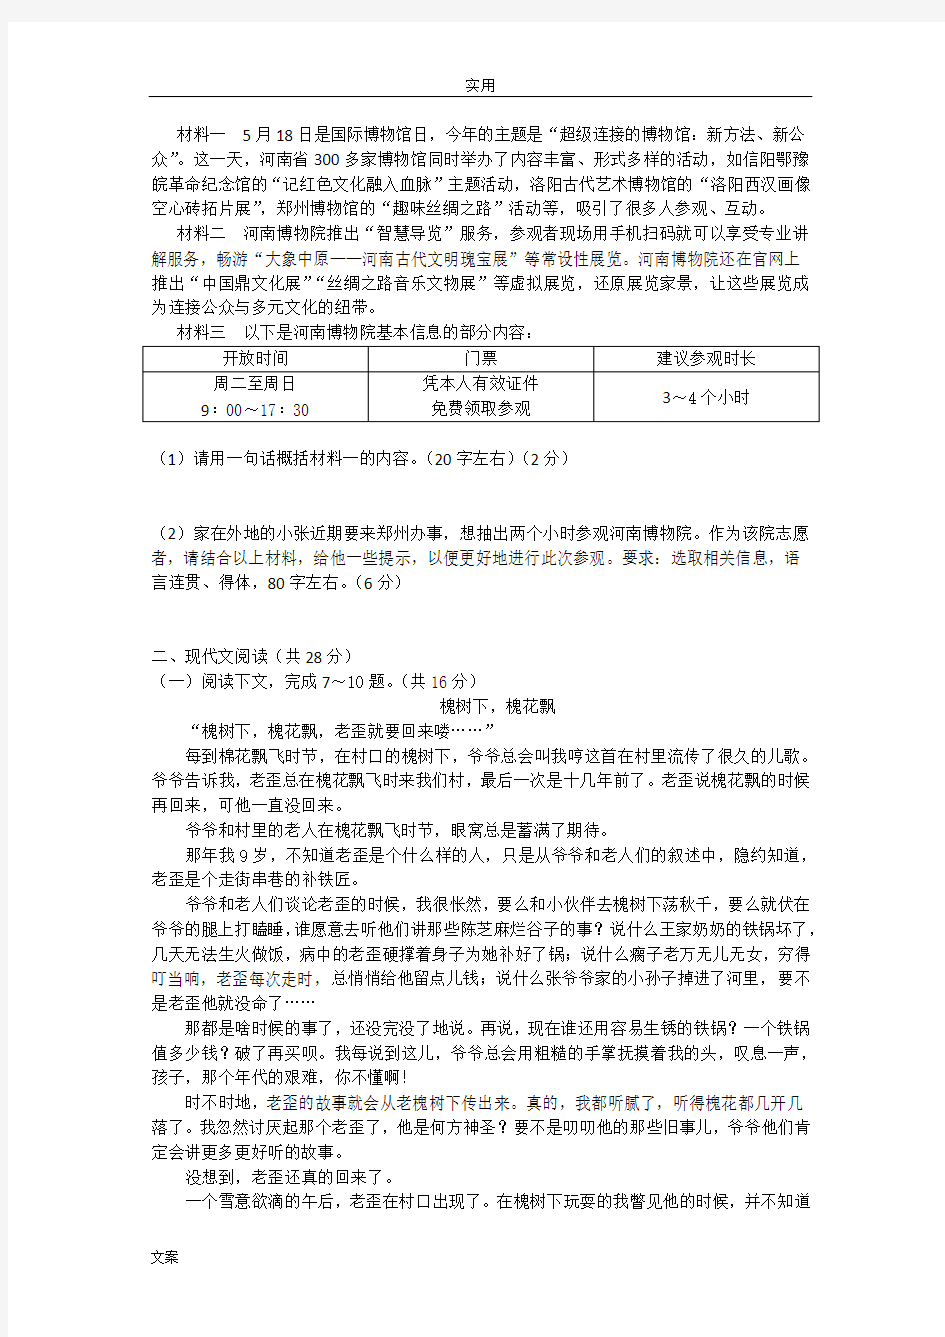 2018年河南省中学考试语文试卷 (副卷)